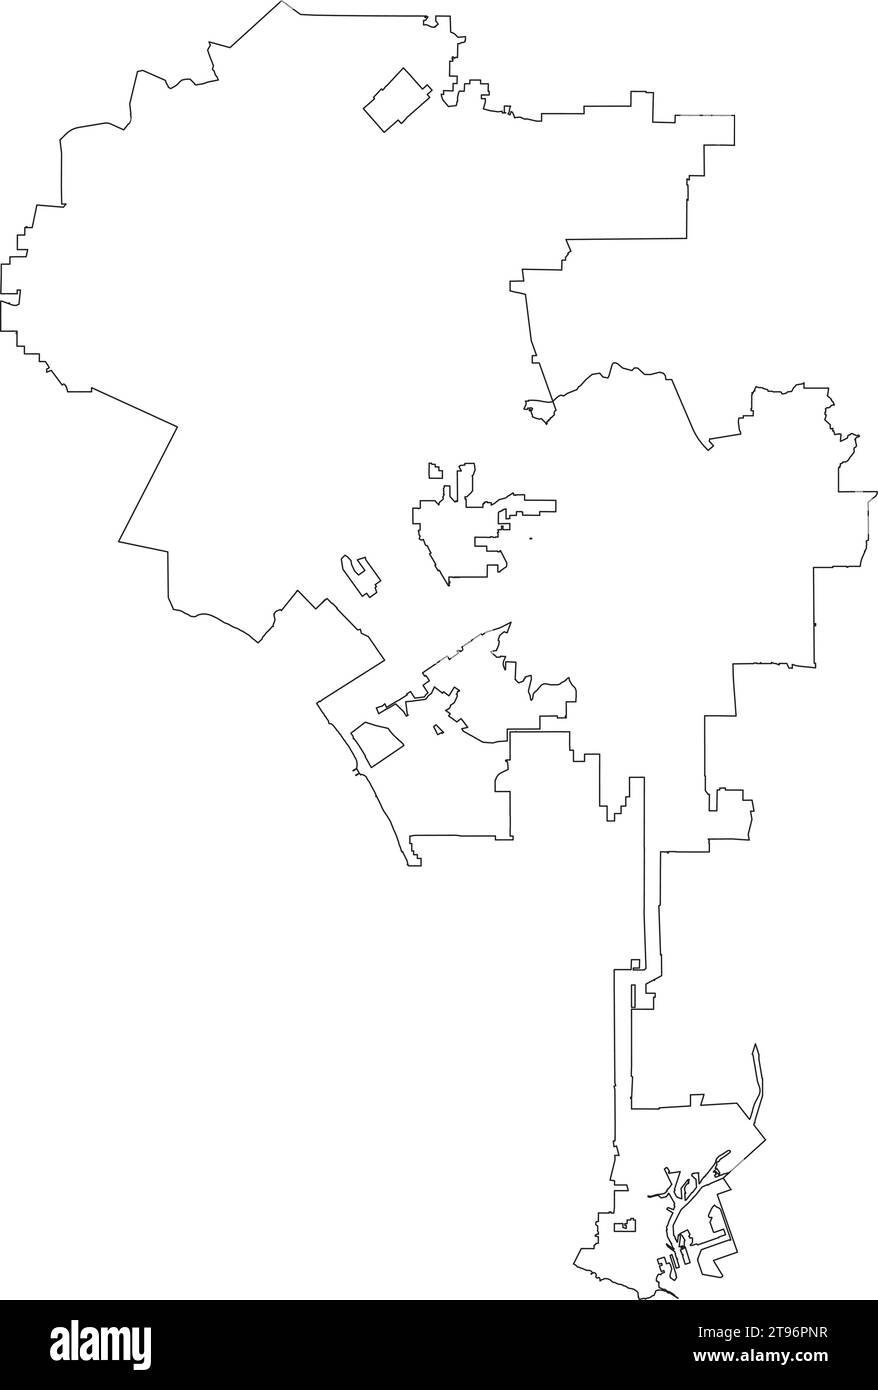 Weiße Karte der STADTRÄTE VON LOS ANGELES, USA Stock Vektor